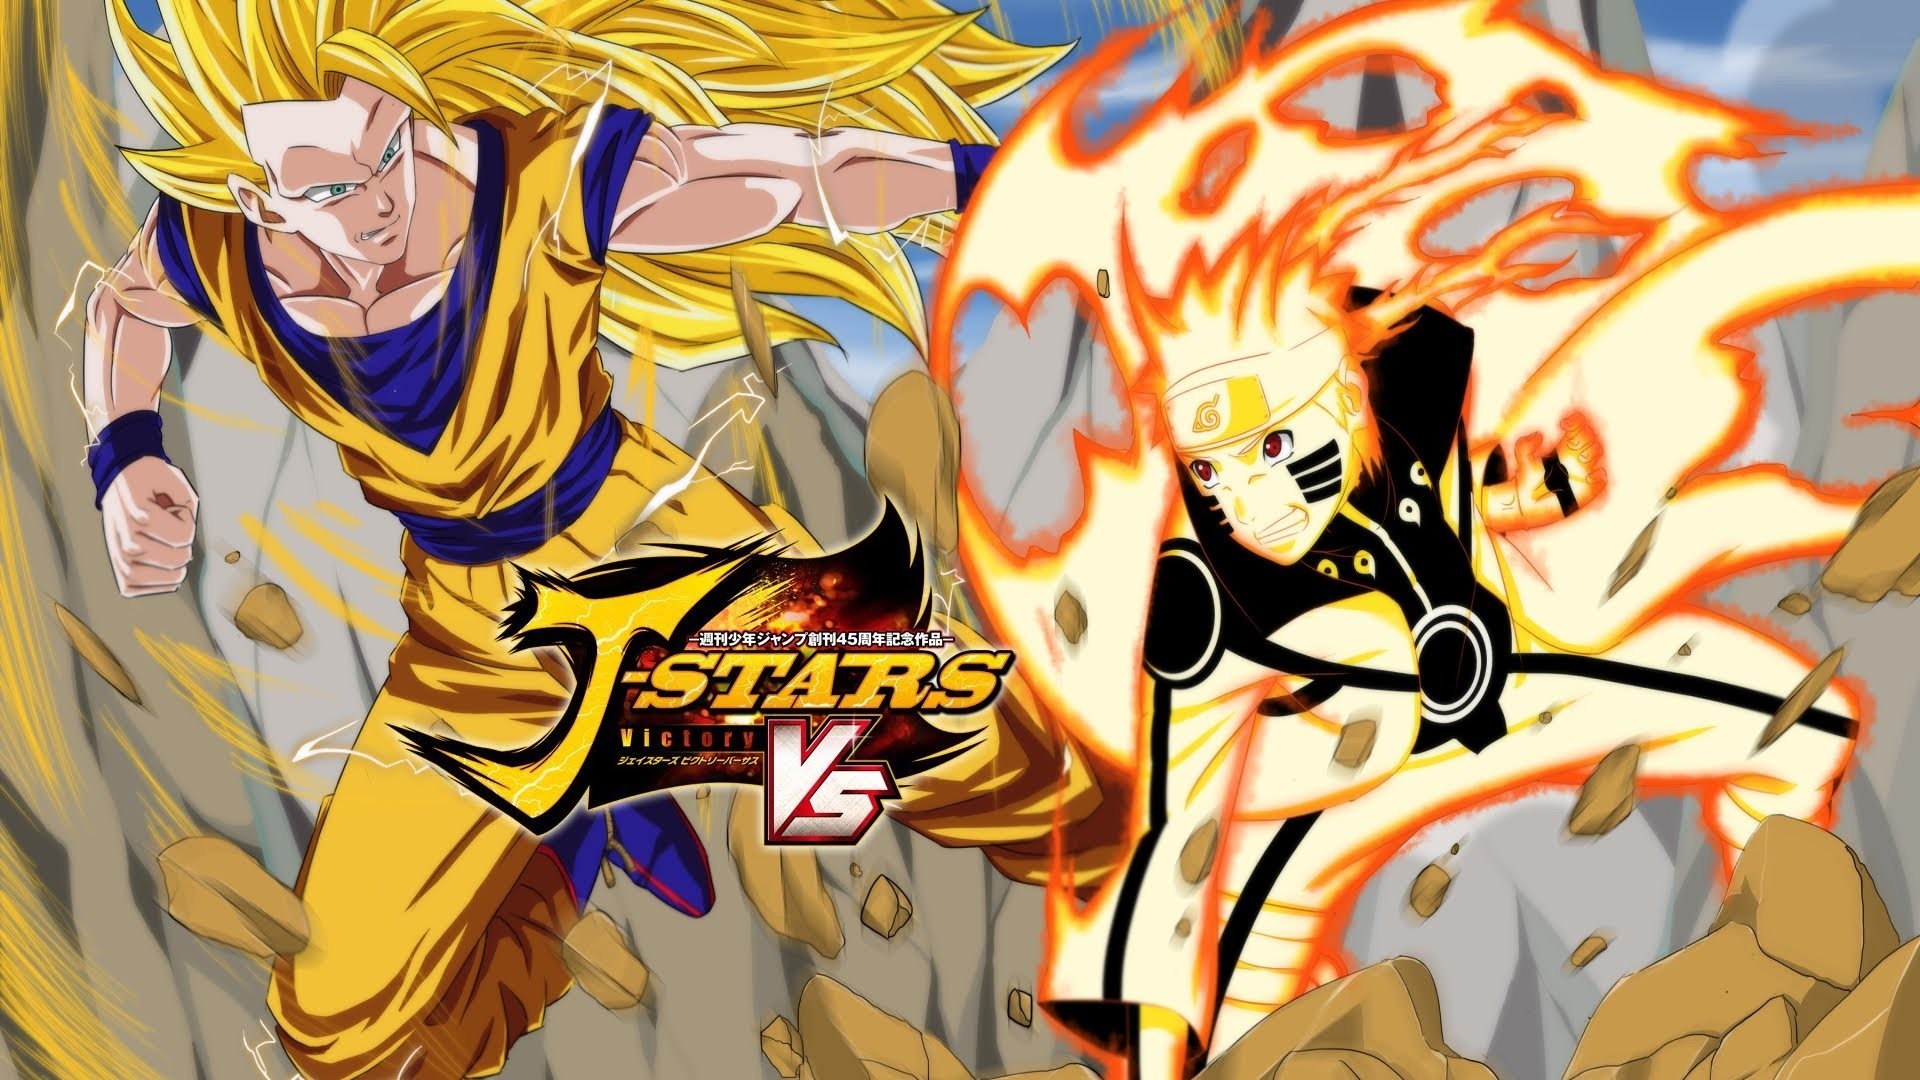 1920x1080 J-Stars Victory Vs - BM Naruto / Goku Gameplay | ã¸ã§ã¤ã¹ã¿ã¼ãº ãã¯ããªã¼ãã¼ãµã¹ - YouTube